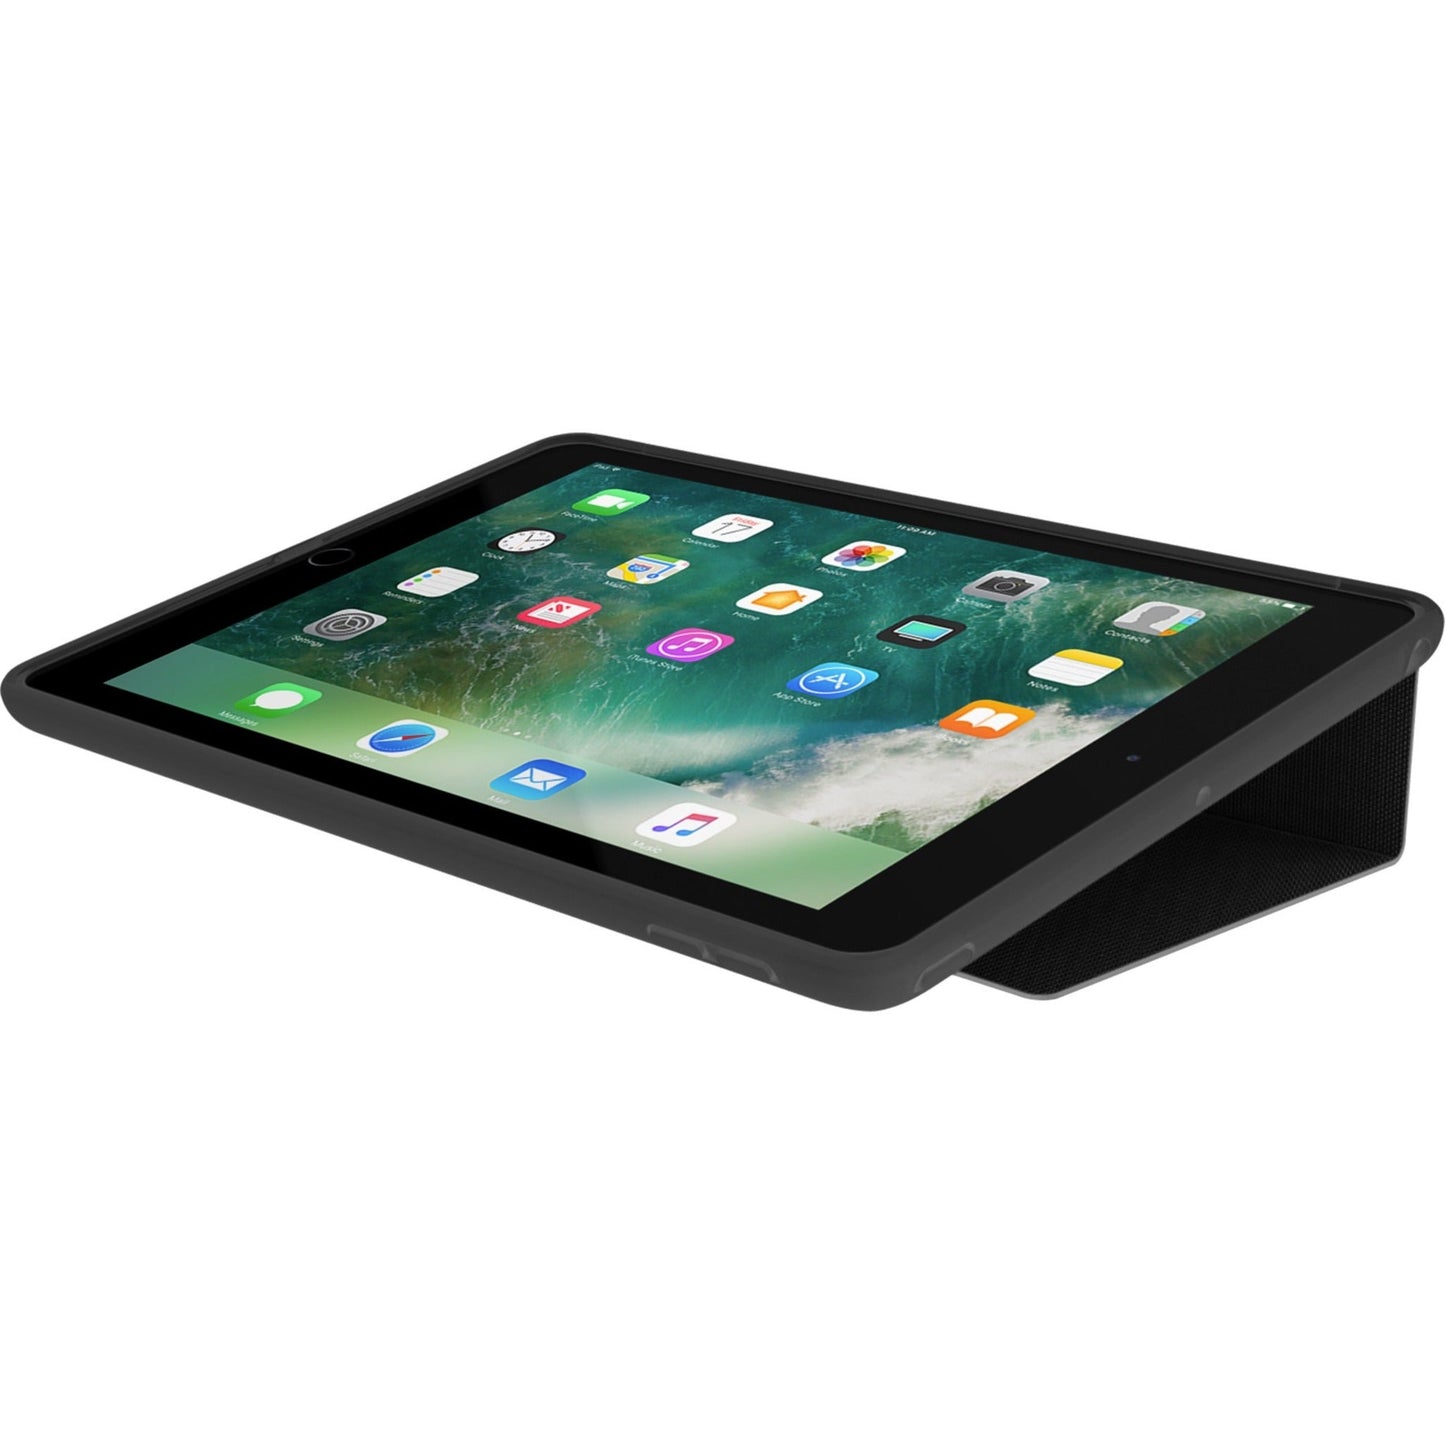 Incipio Clarion Carrying Case (Folio) for 9.7" Apple iPad (5th Generation) Tablet - Translucent Black